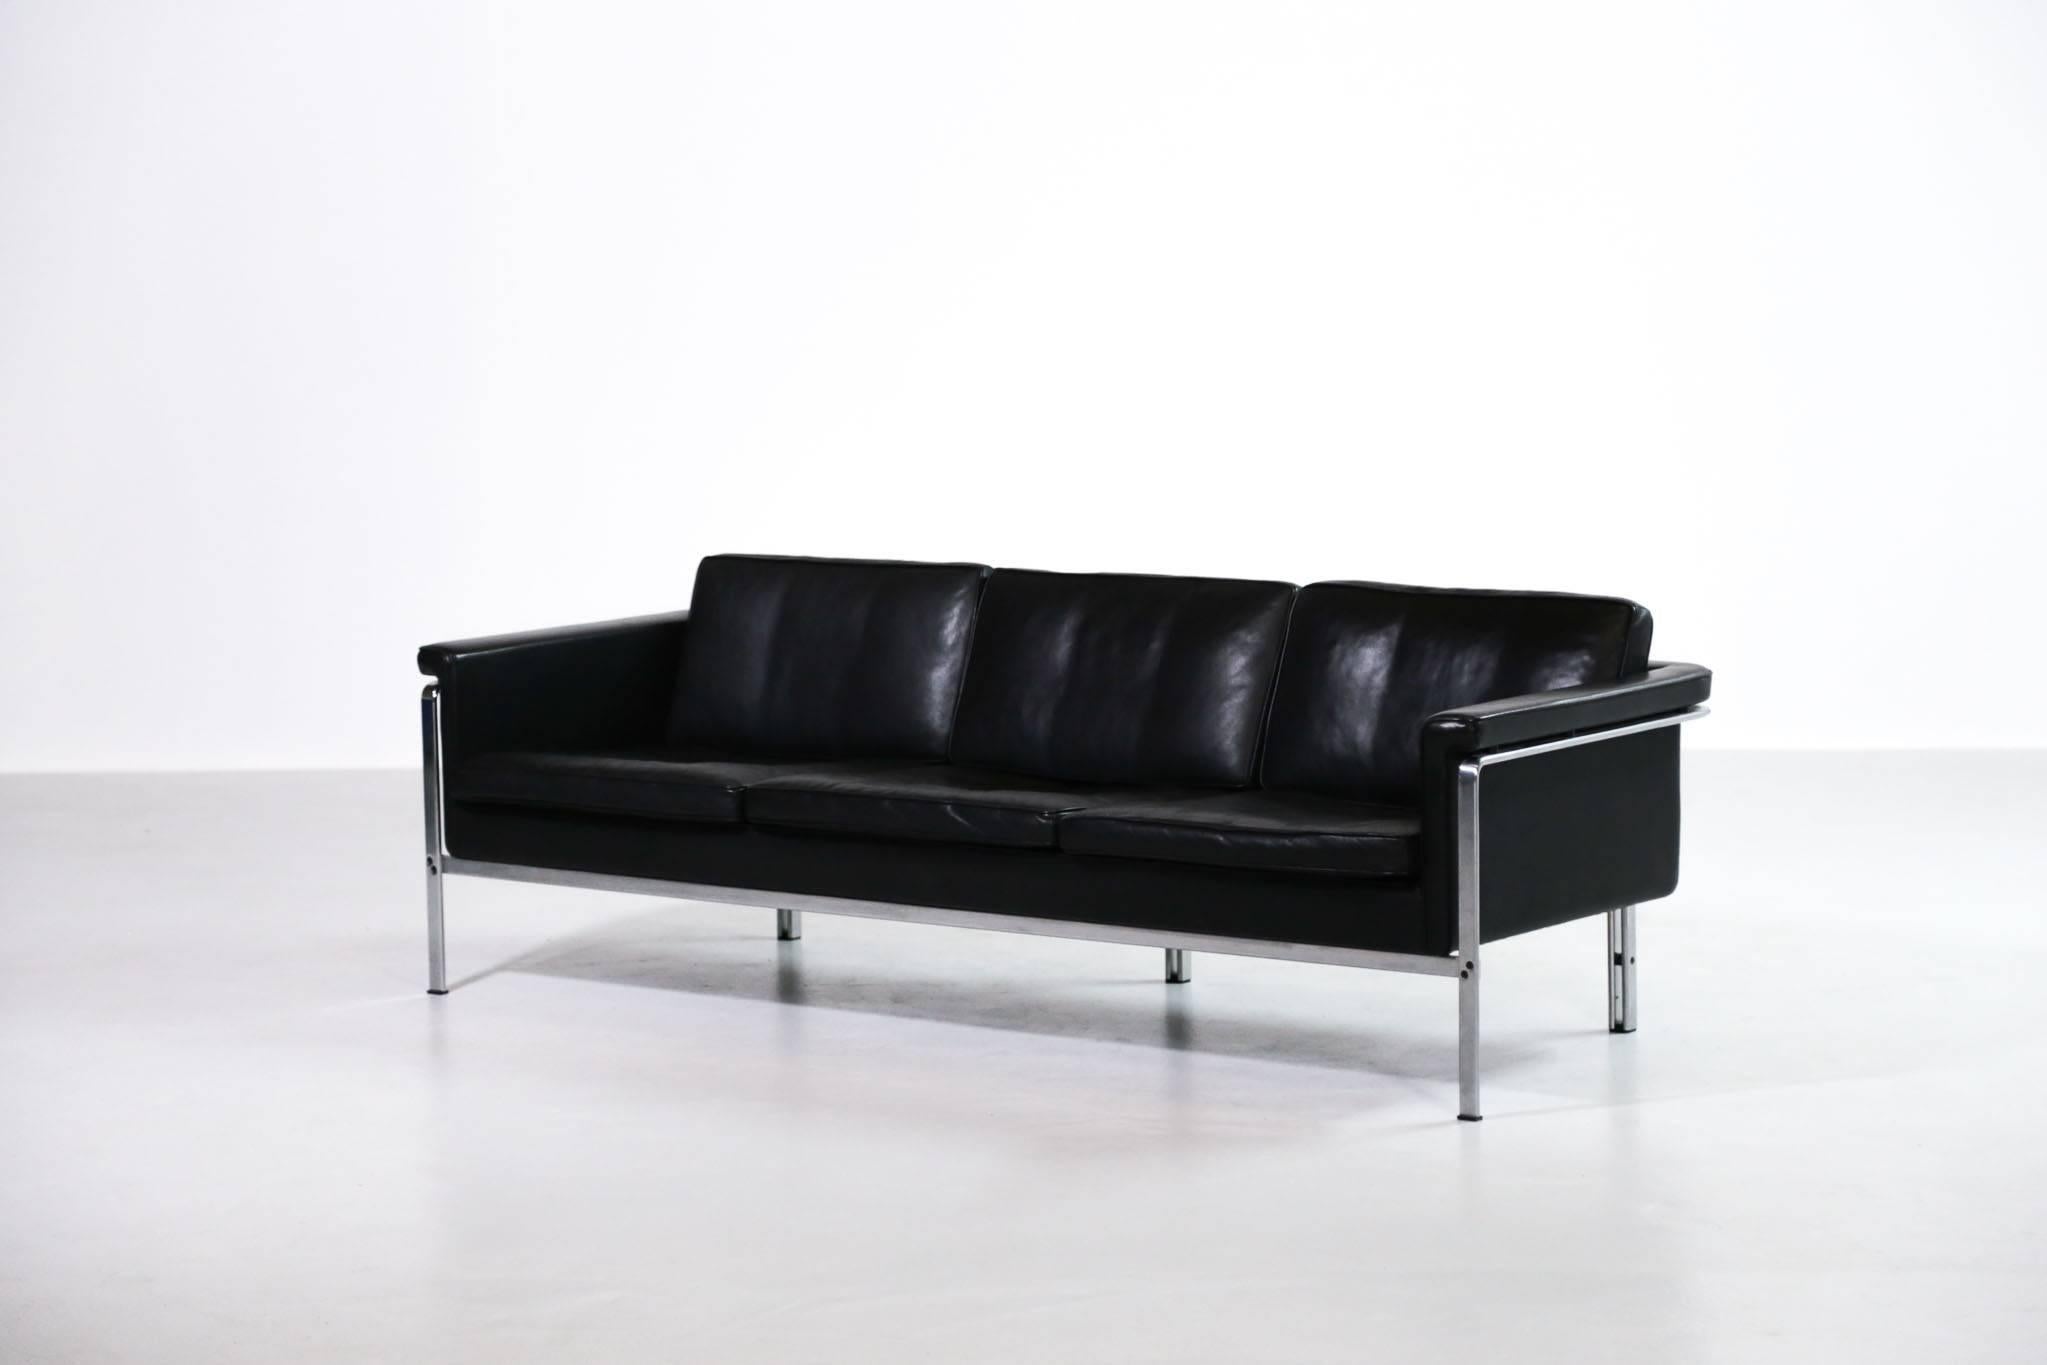 Rare canapé conçu par Horst Bruning.
Très beau design en cuir noir et acier.
 